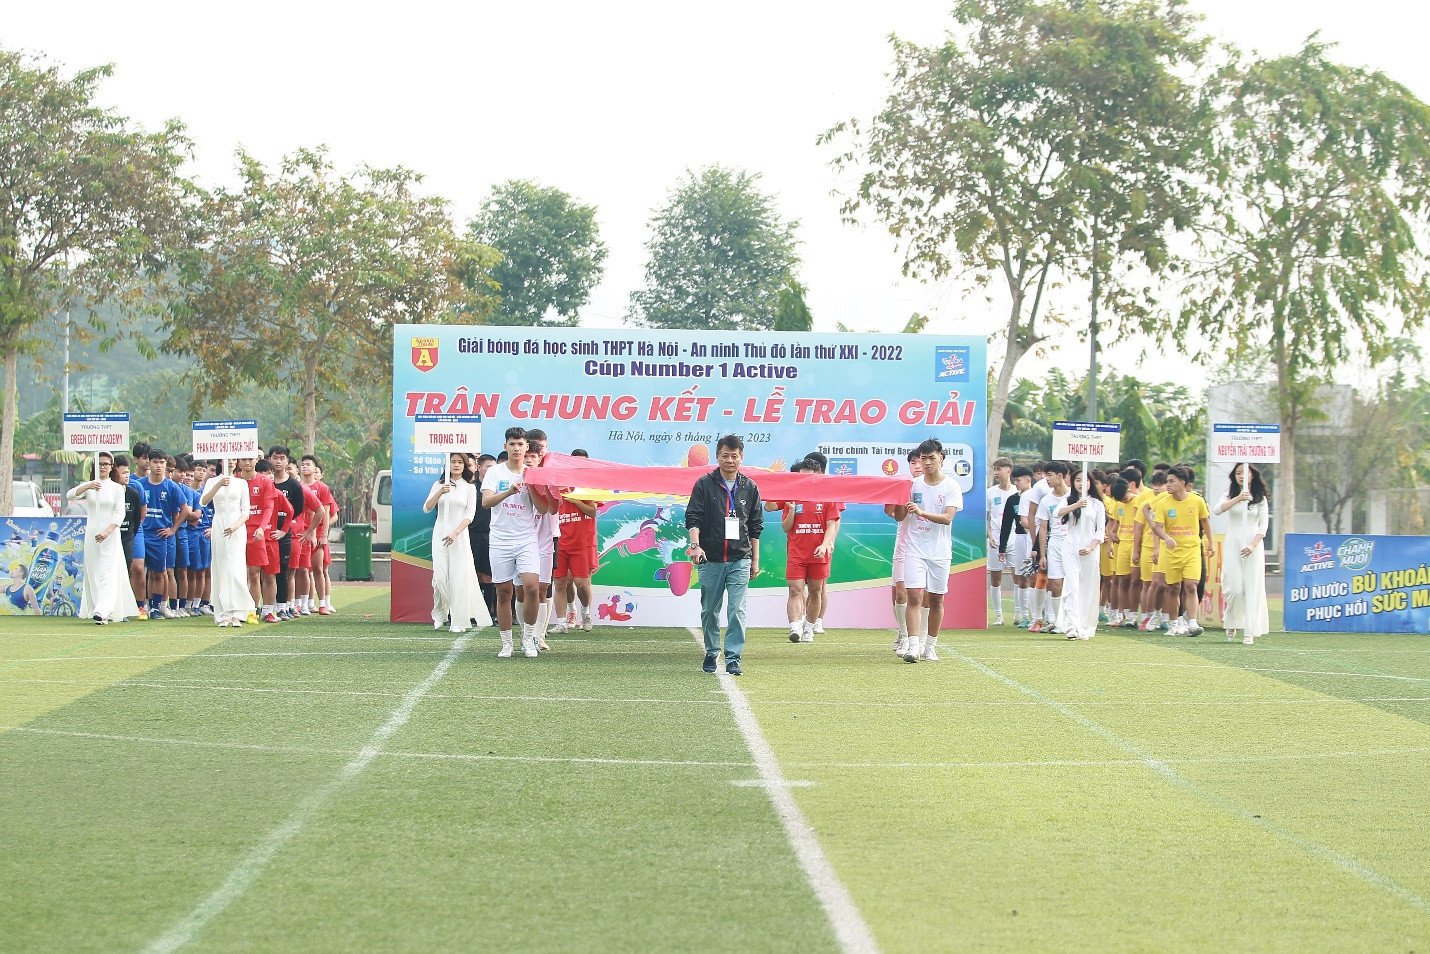 Chung kết giải bóng đá THPT Hà Nội - An ninh Thủ đô lần XXI năm 2022 diễn ra vào ngày 08/01/2023.